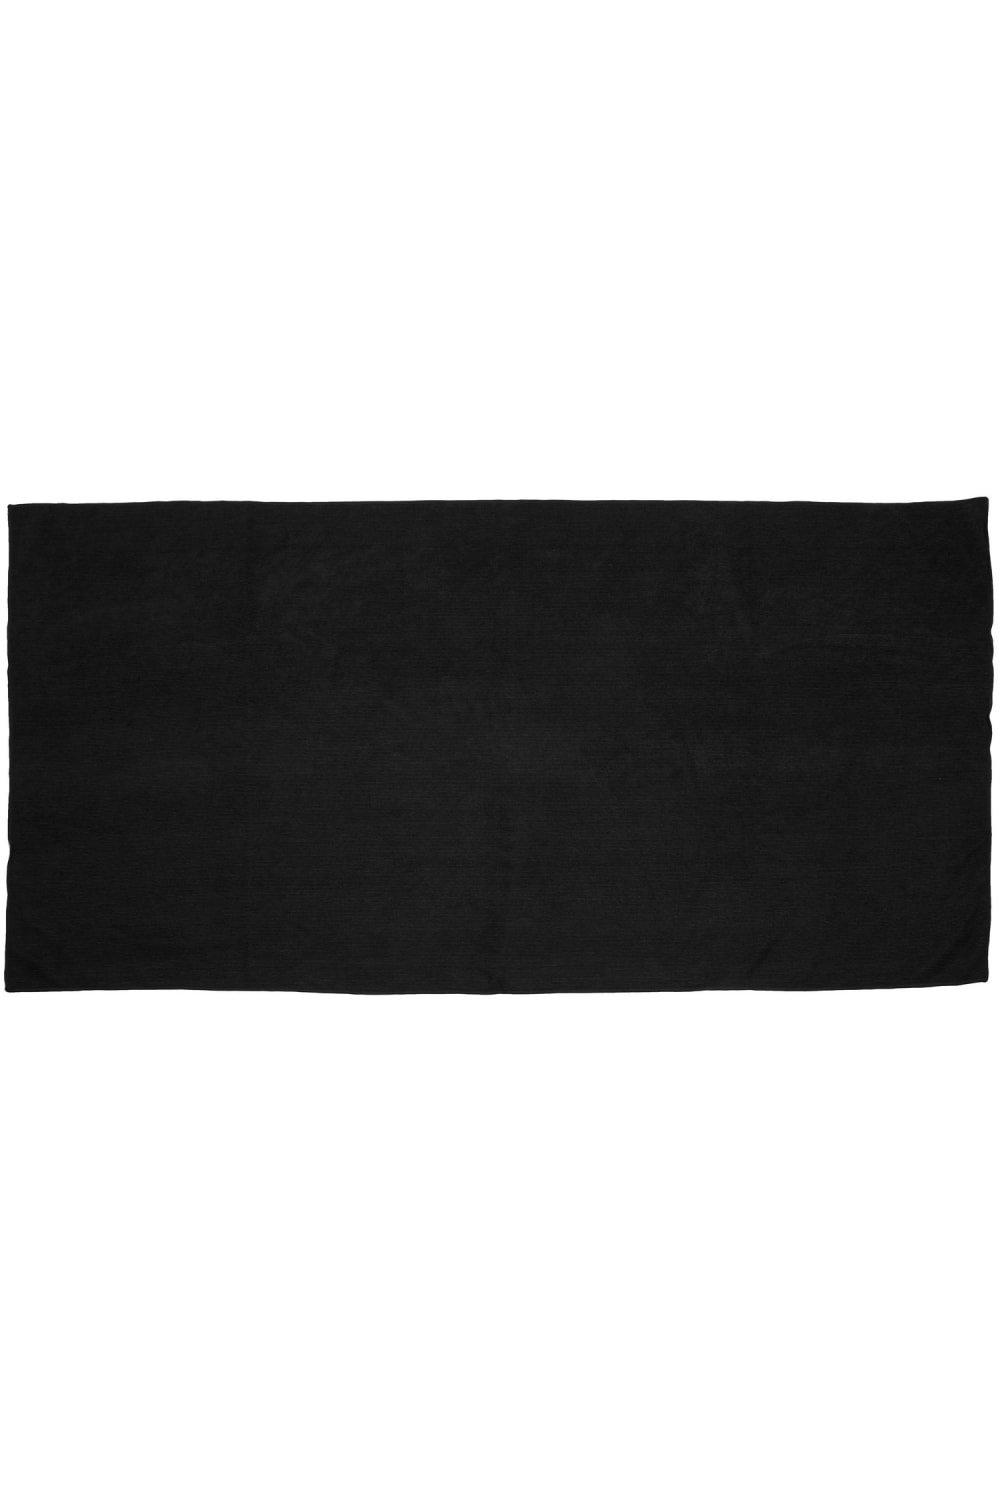 Towel City Microfibre Guest Towel|black